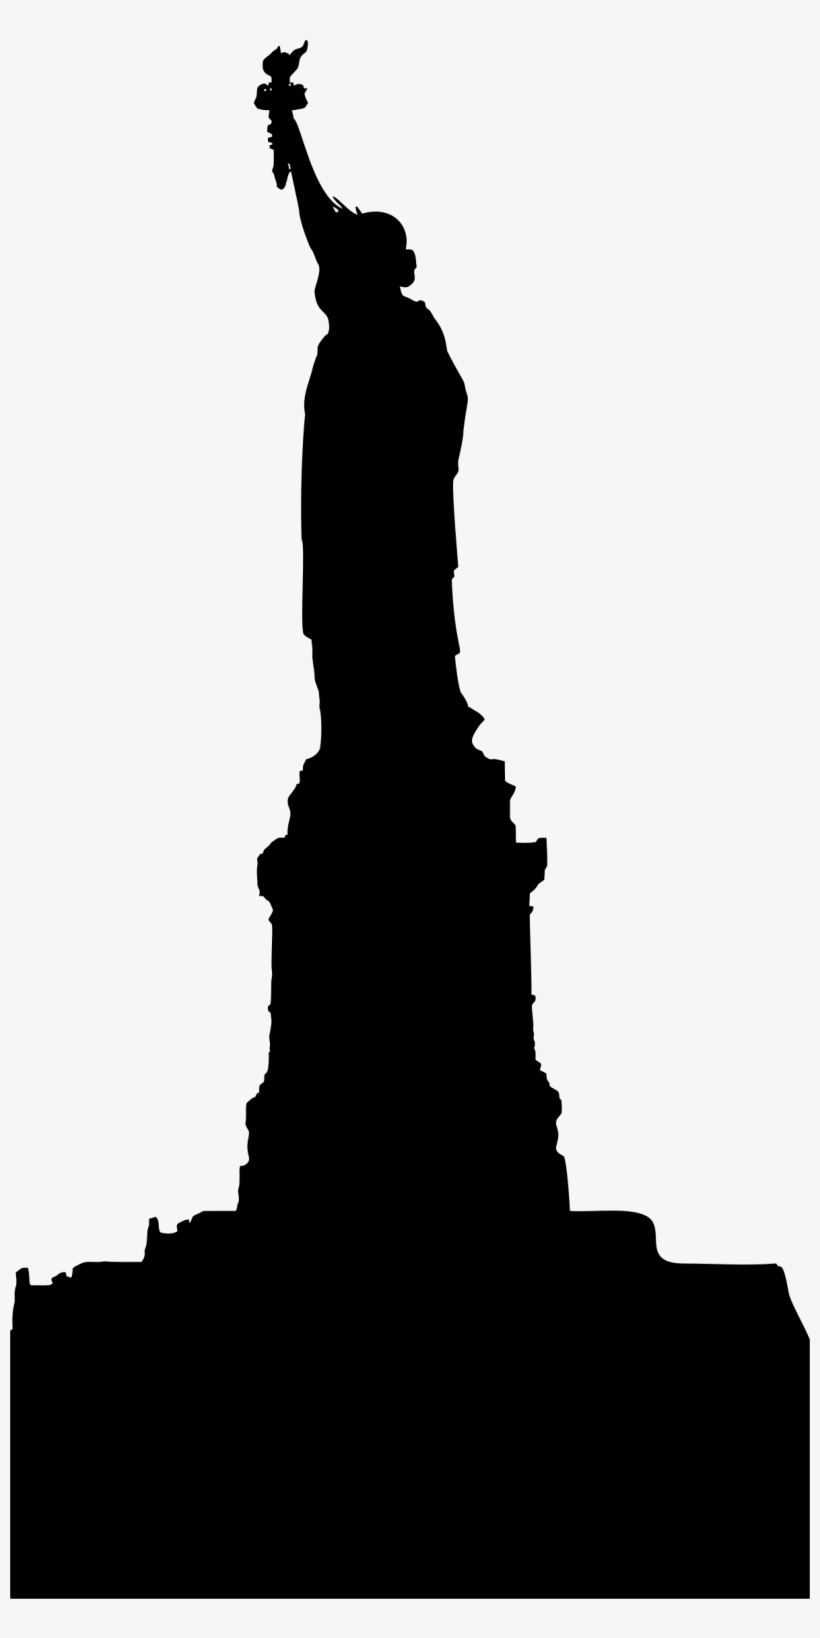 Big Image - Statue Of Liberty, transparent png #4180075